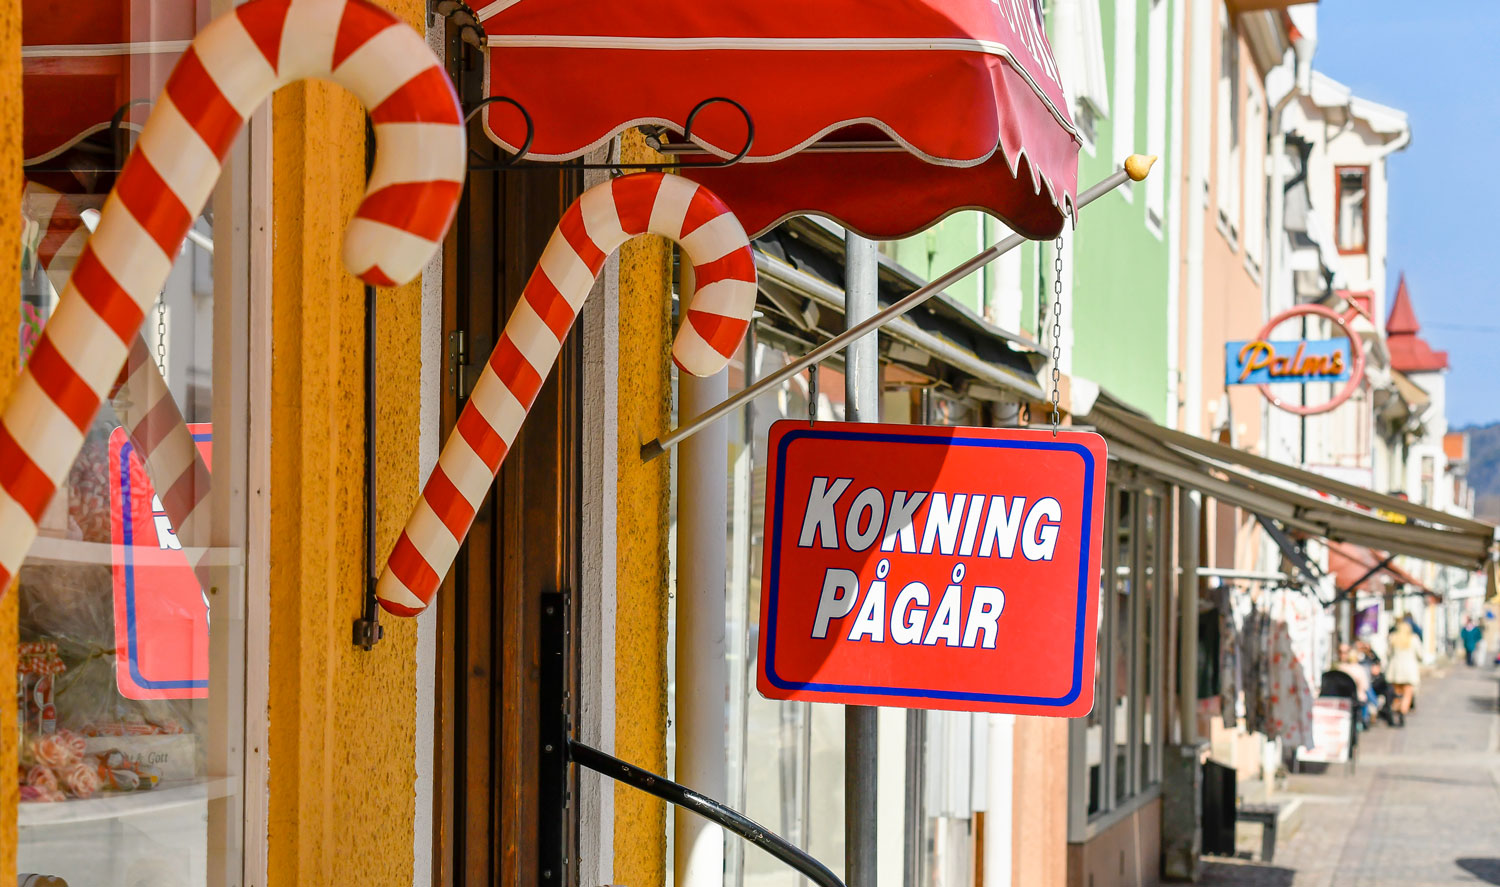 Gata med skyltar i form av polkagrisar och skyltar med informationen "Kokning pågår".